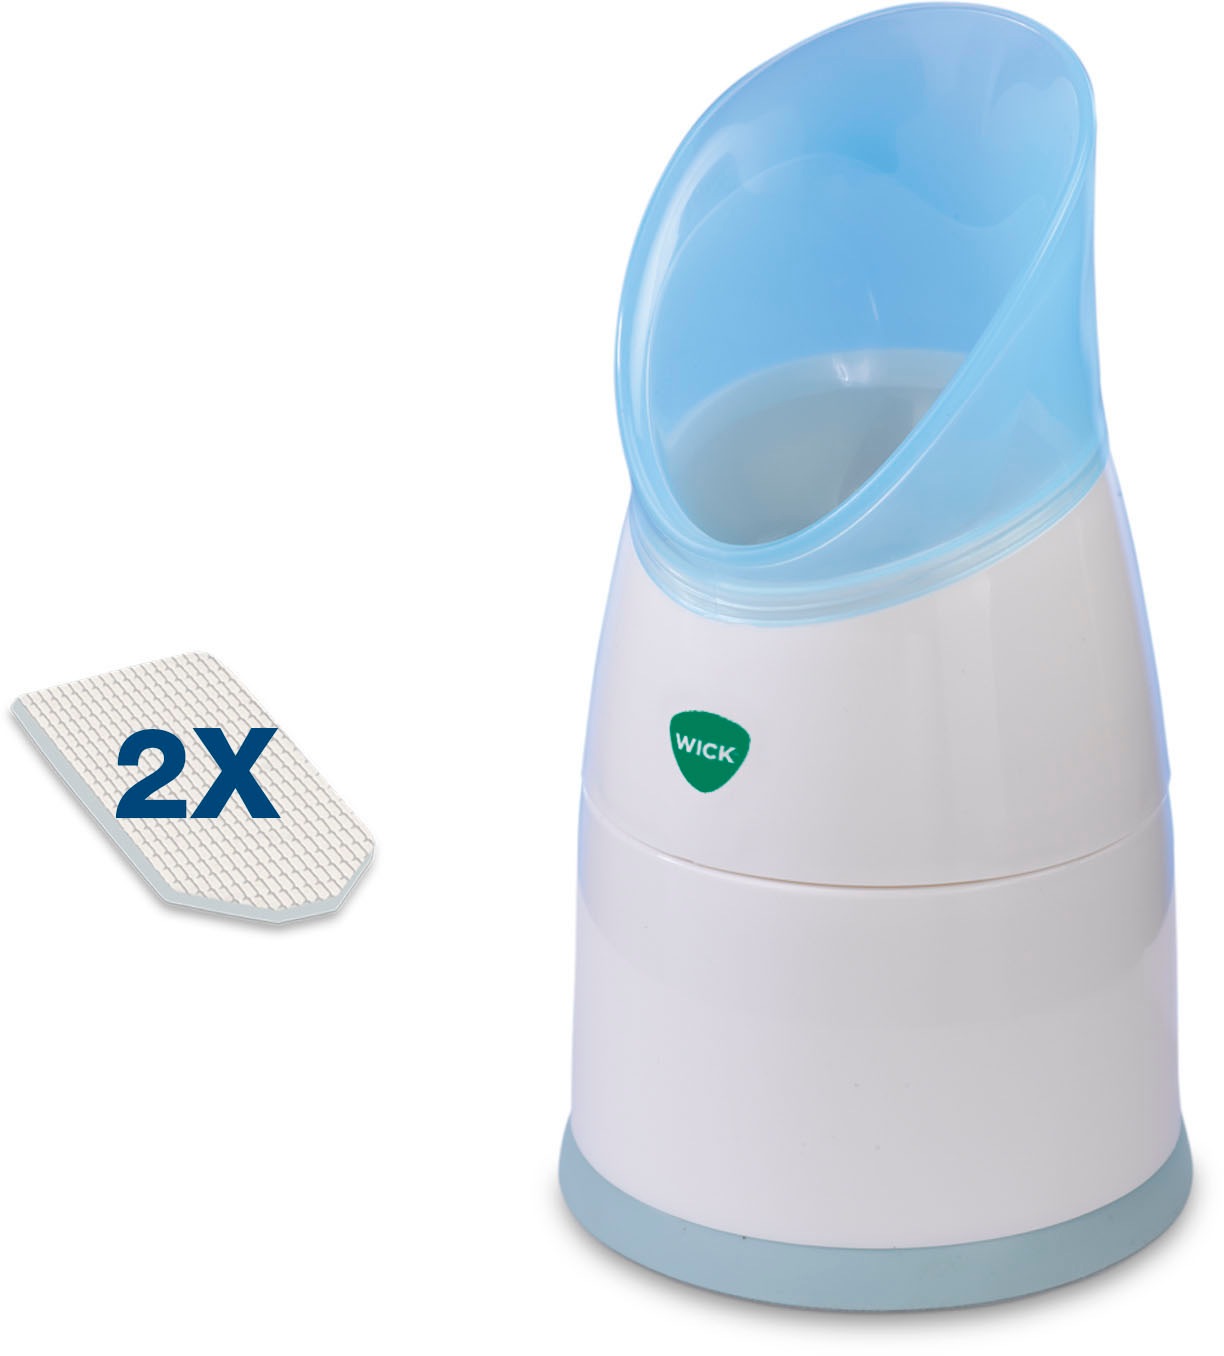 WICK Inhalator »W1300V1«, kompakt und leicht zu bedienen, unterstützt der Inhalator freies Atmen